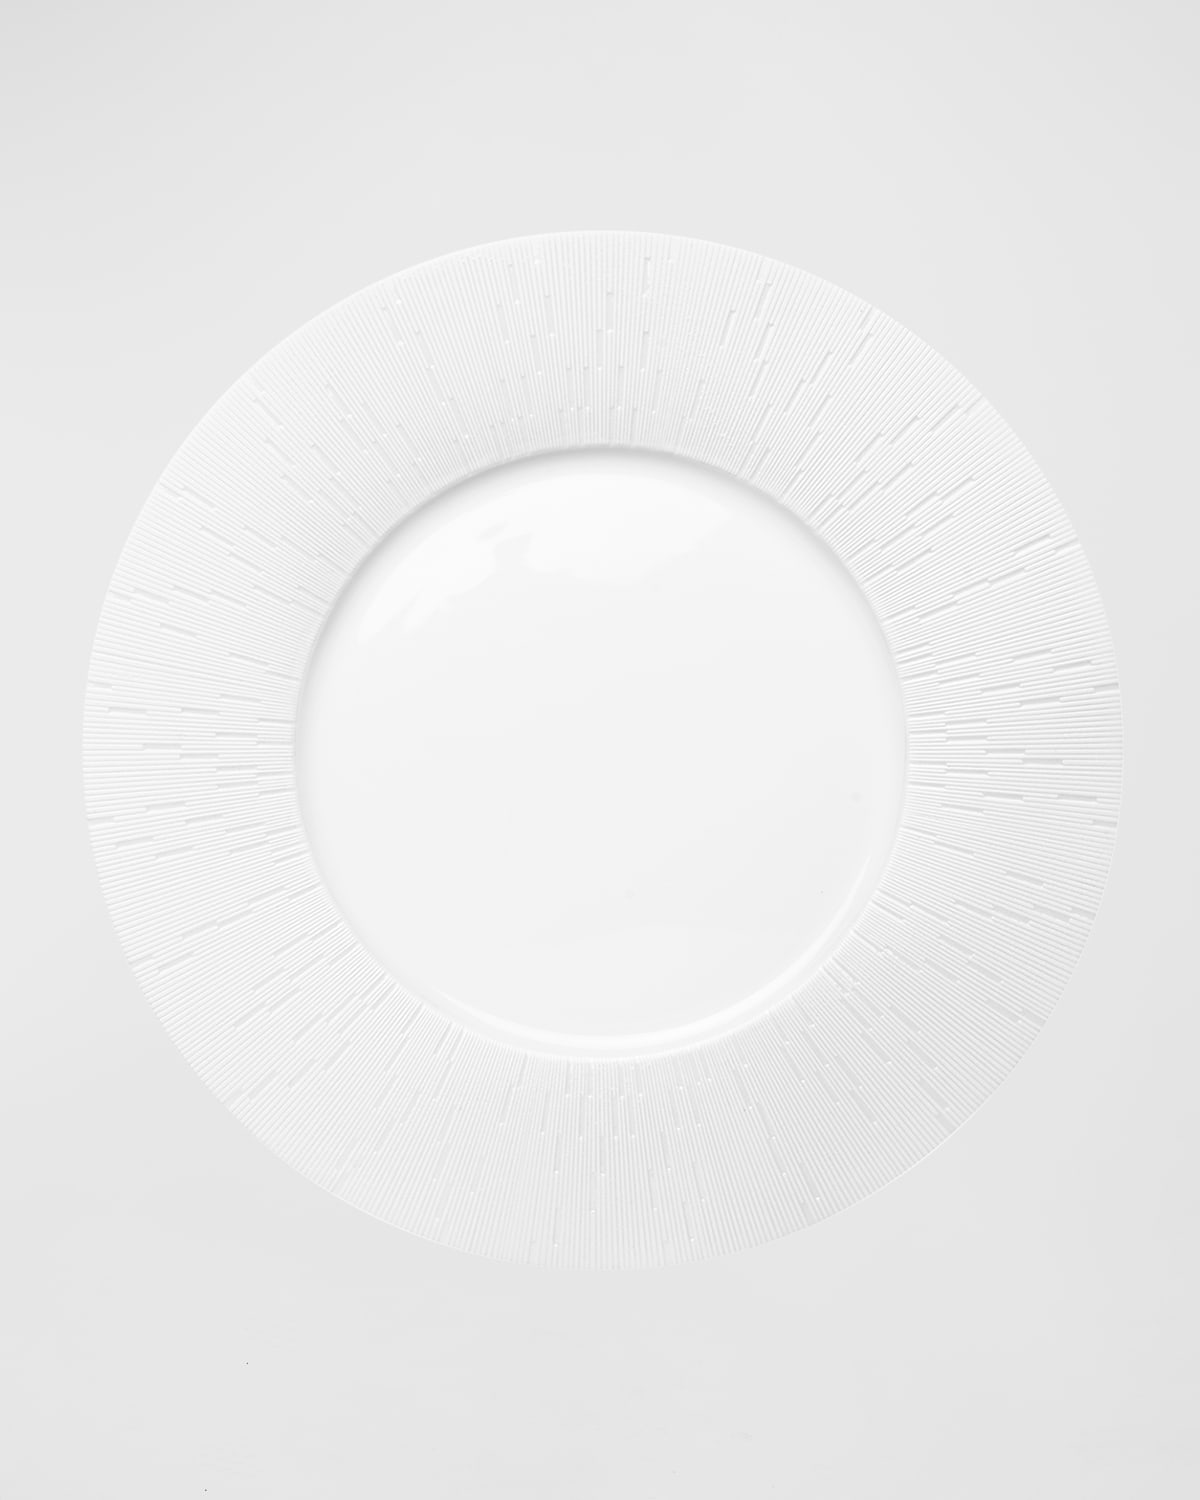 Haviland Infini White Dessert Plate